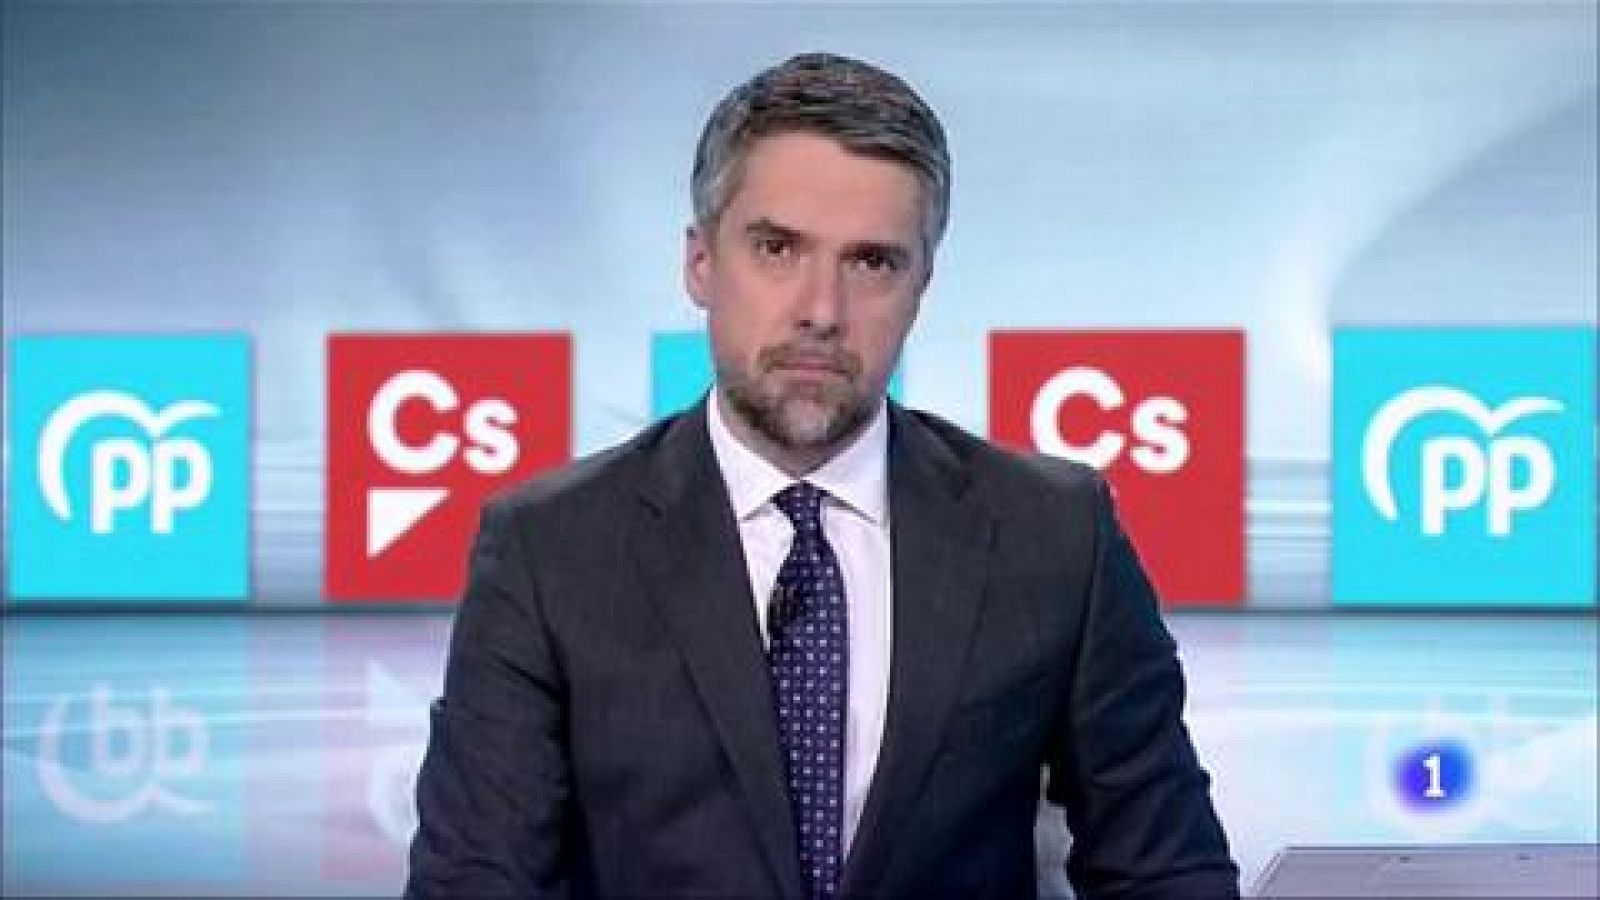 Elecciones vascas 2020 | Alfonso Alonso, reacio a pactar con Cs para las elecciones vascas - RTVE.es